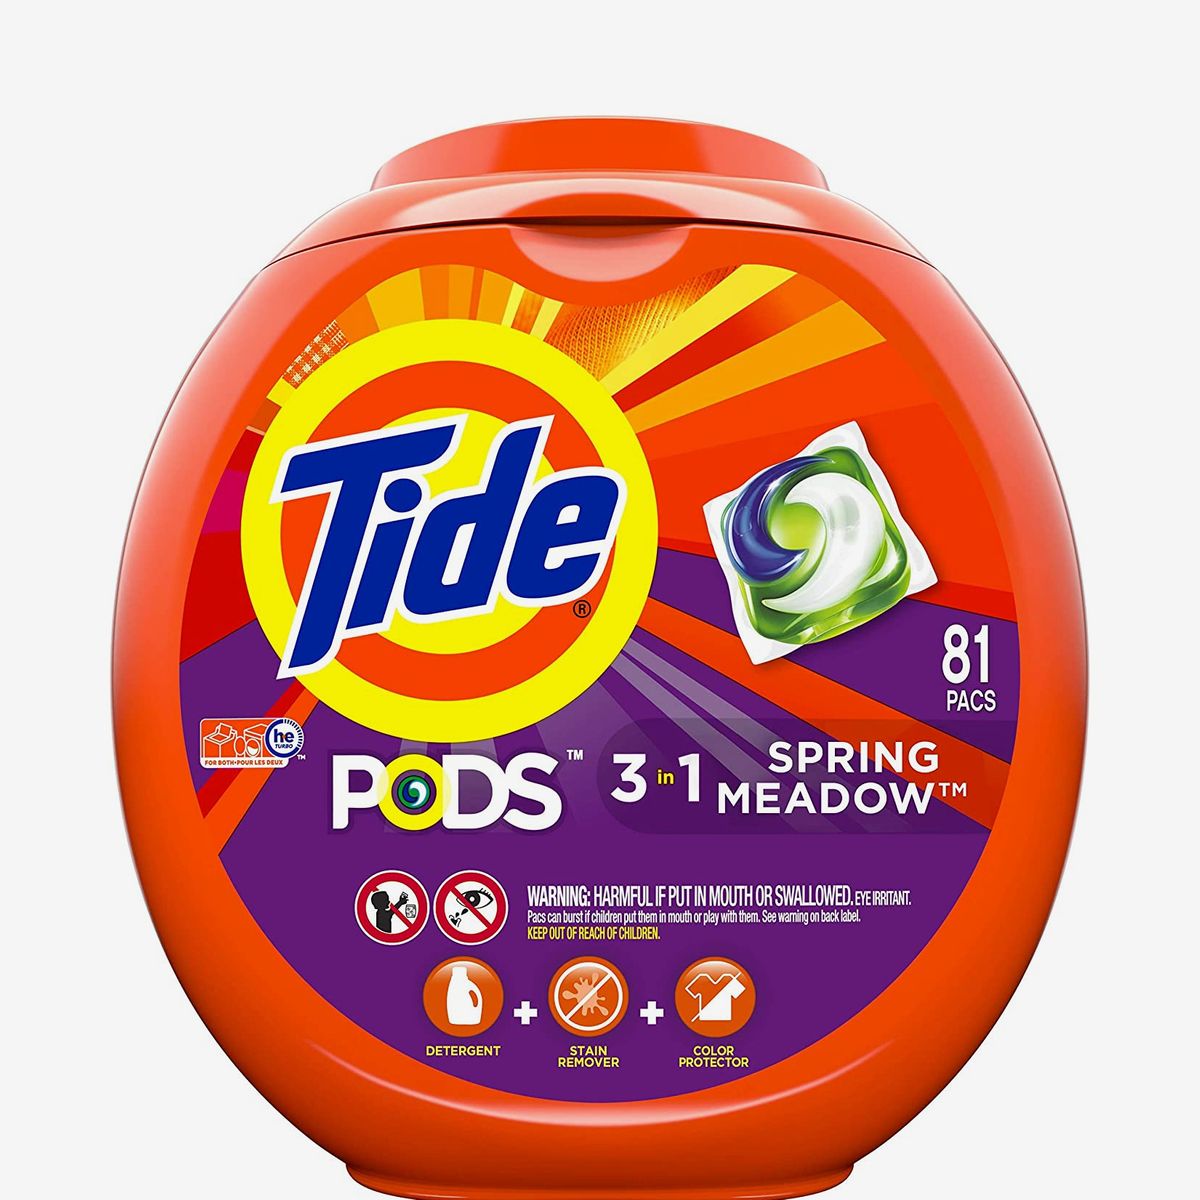 best cloth detergent